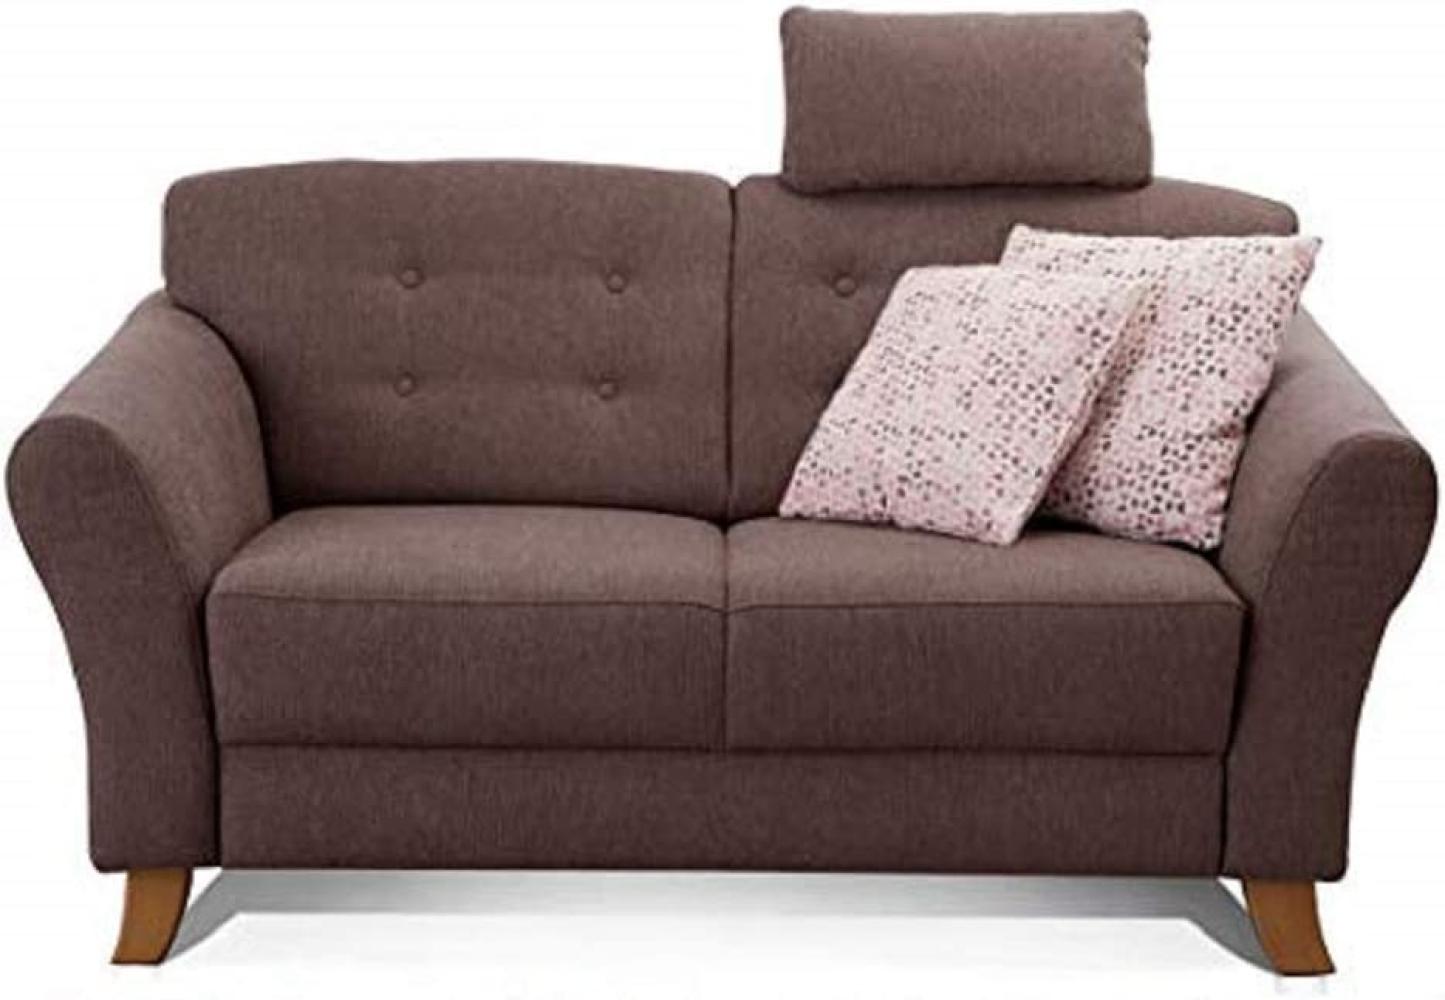 Cavadore 2-Sitzer-Sofa / Moderne Couch im Landhausstil mit Knopfeinzug im Rücken / Federkern / Inkl. Kopfstütze / 163 x 89 x 90 / Flachgewebe dunkelbraun Bild 1